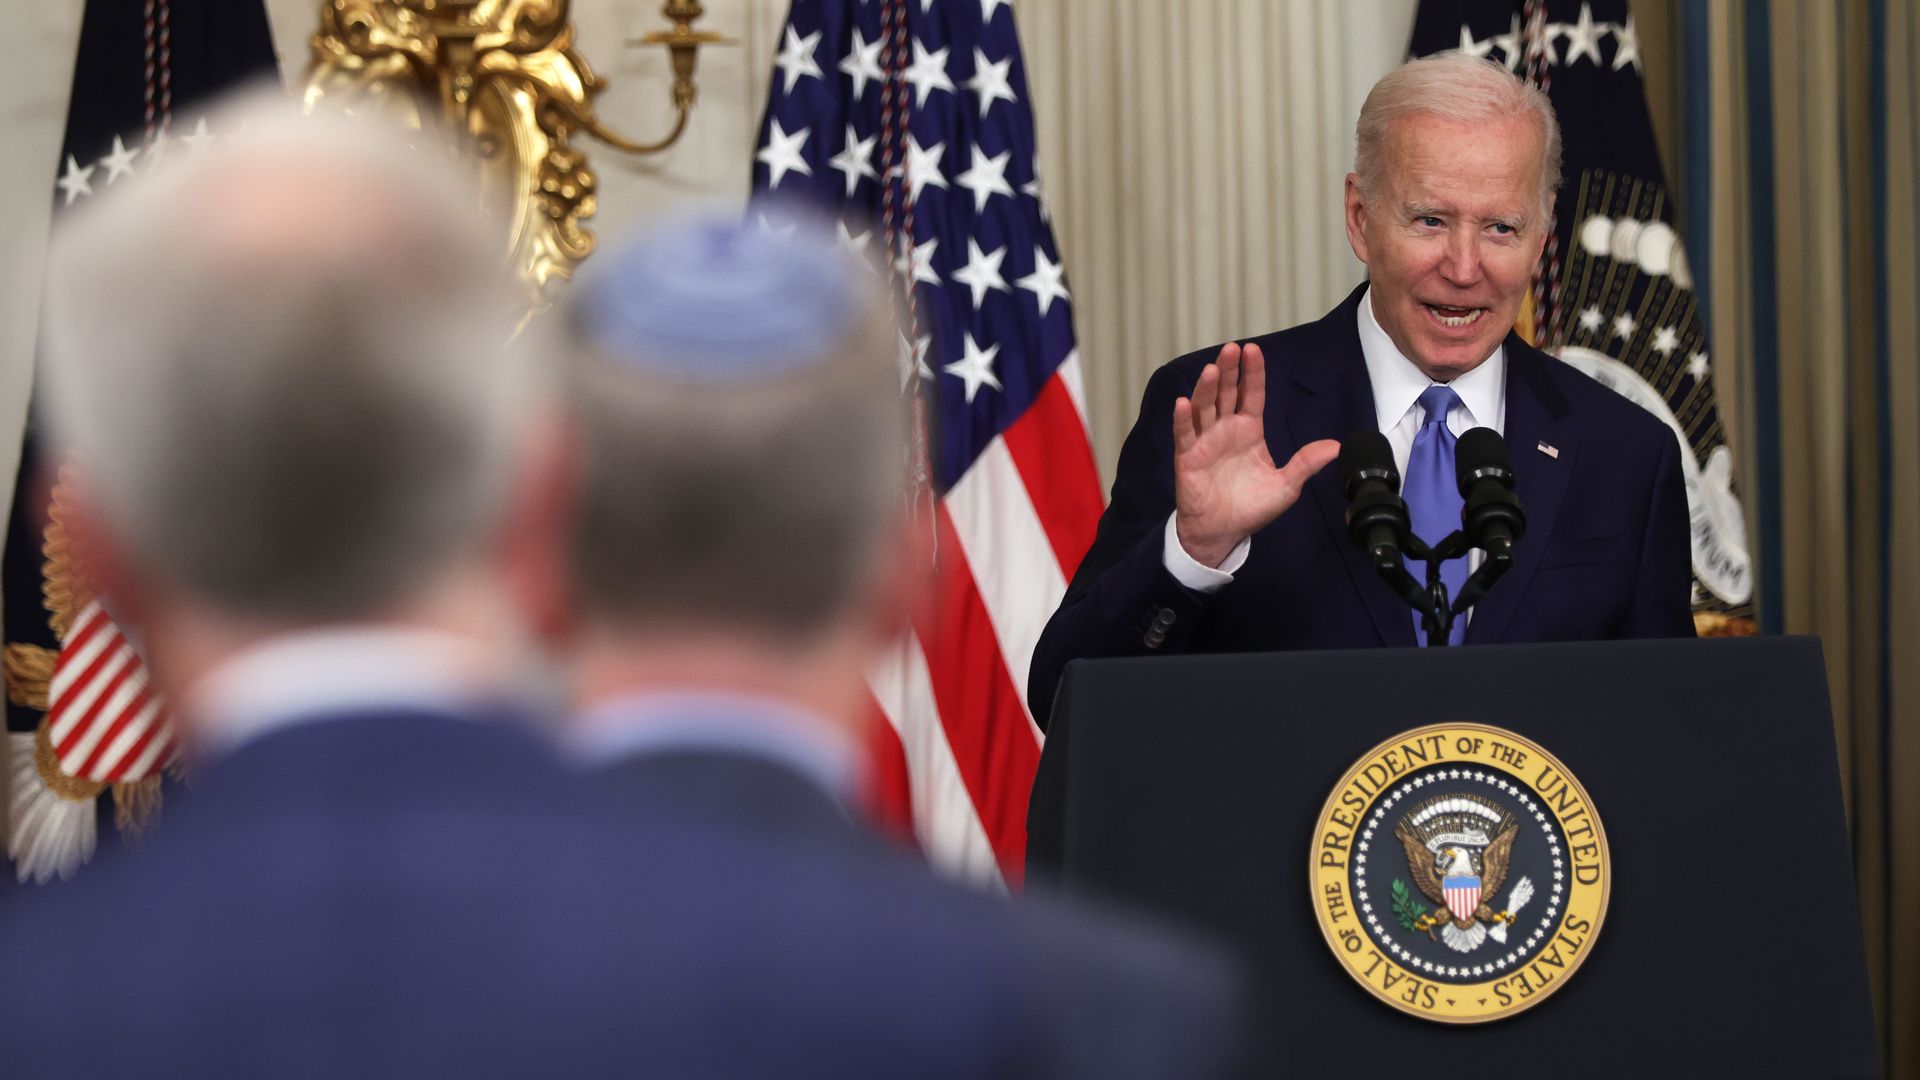 President Biden speaking in the White House on June 16.